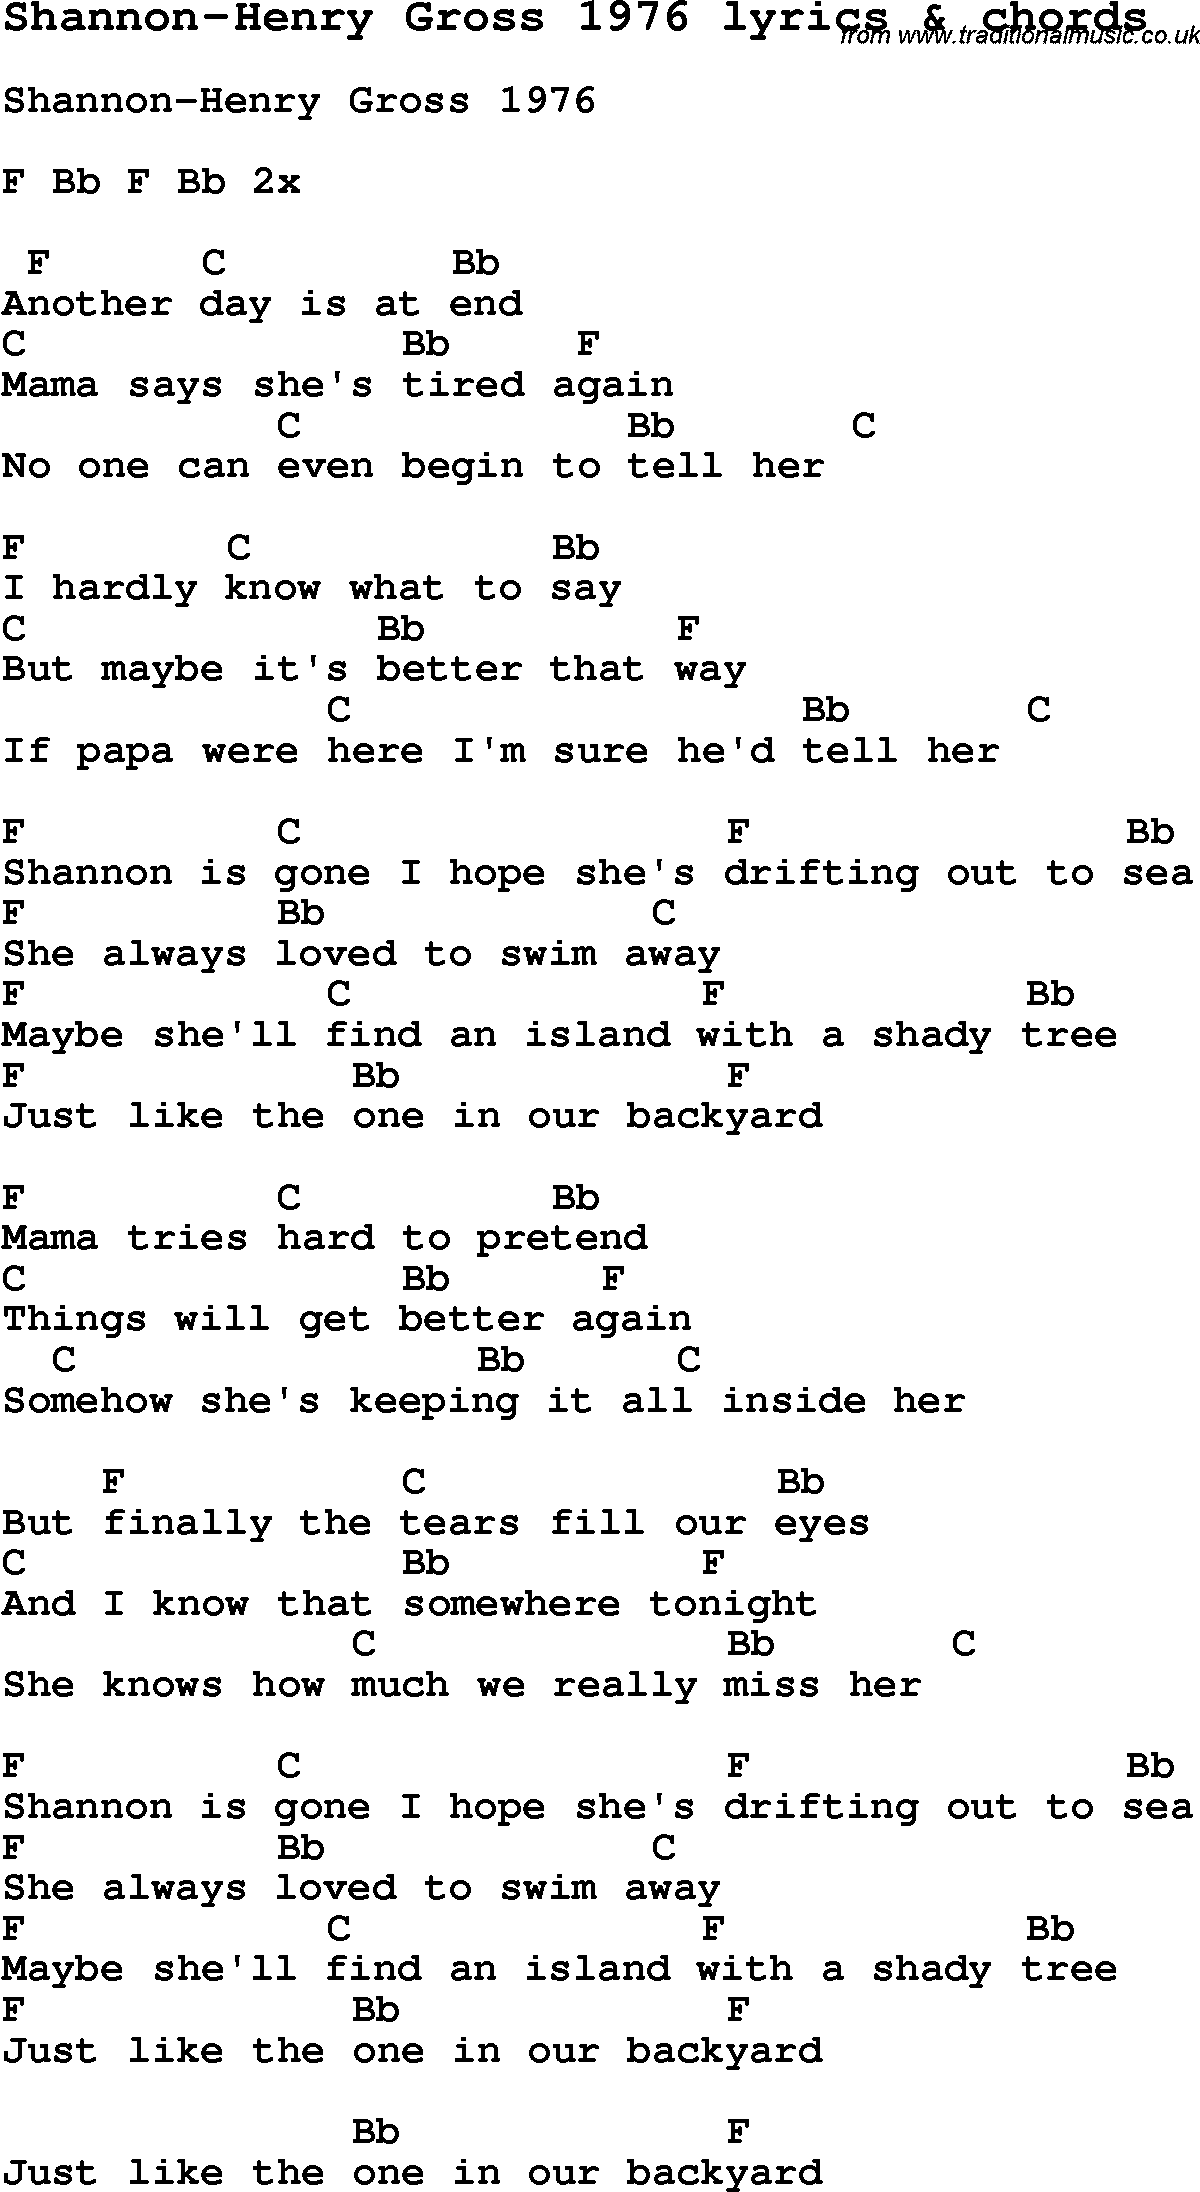 Love Song Lyrics for: Shannon-Henry Gross 1976 with chords for Ukulele, Guitar Banjo etc.